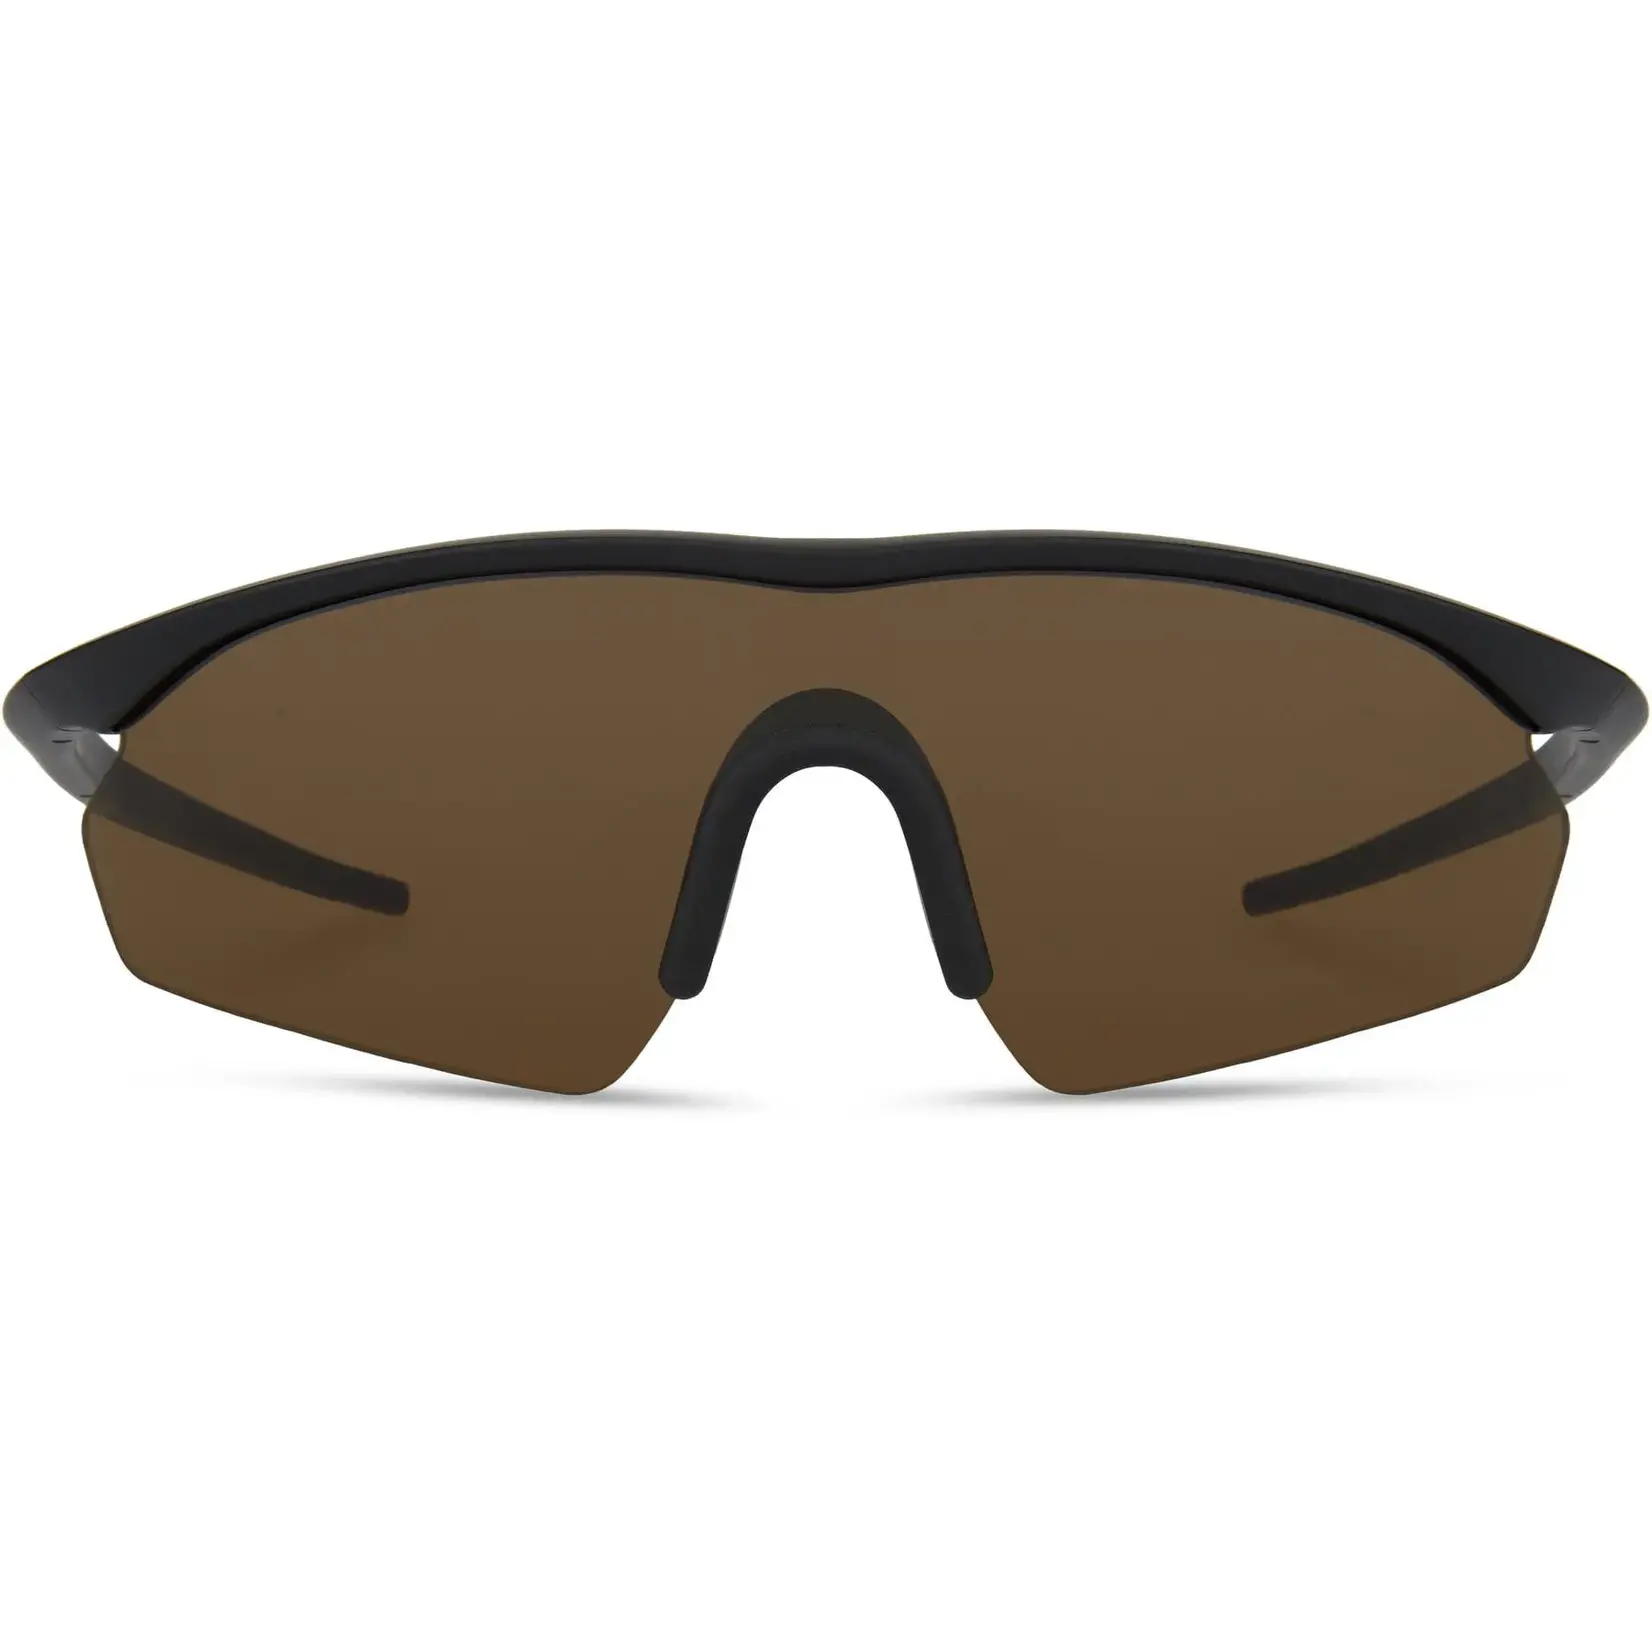 Madison D'Arcs Glasses 3-lens pack - matt black frame / dark, amber and clear lenses